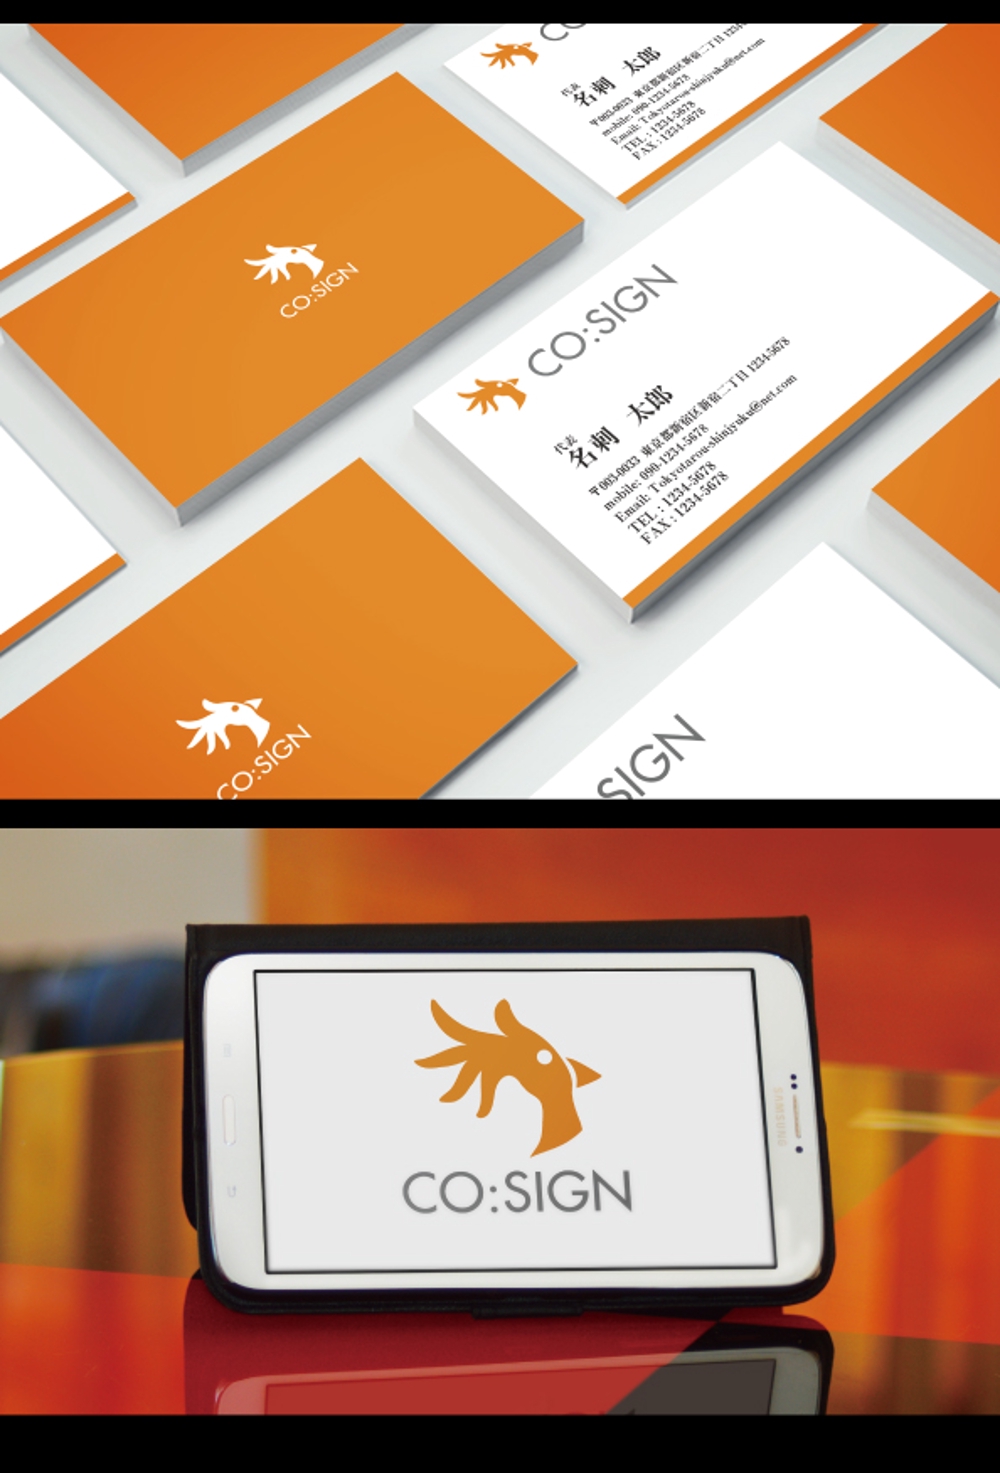 コワーキングスペース「CO:SIGN」のロゴ